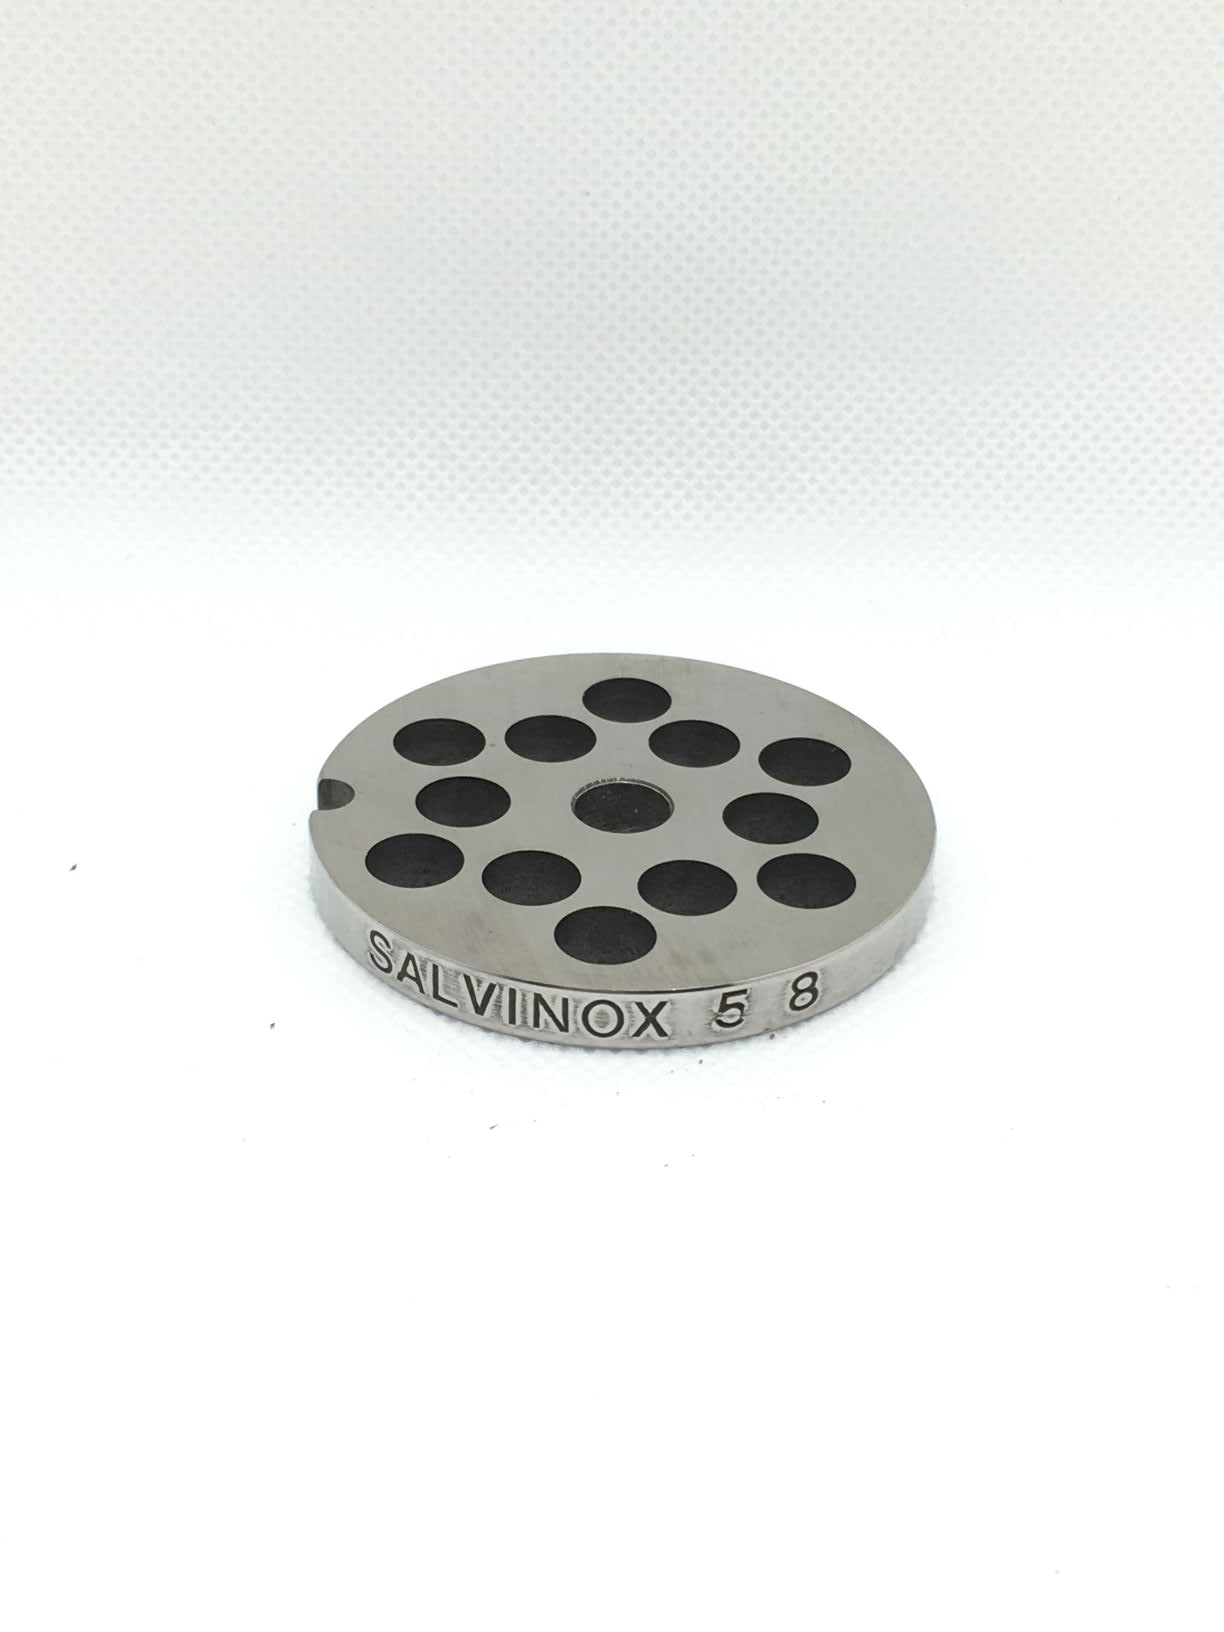 Trafila in acciaio inox con 12 fori da 8 mm per tritacarne N° 5 di Metallurgica Lux